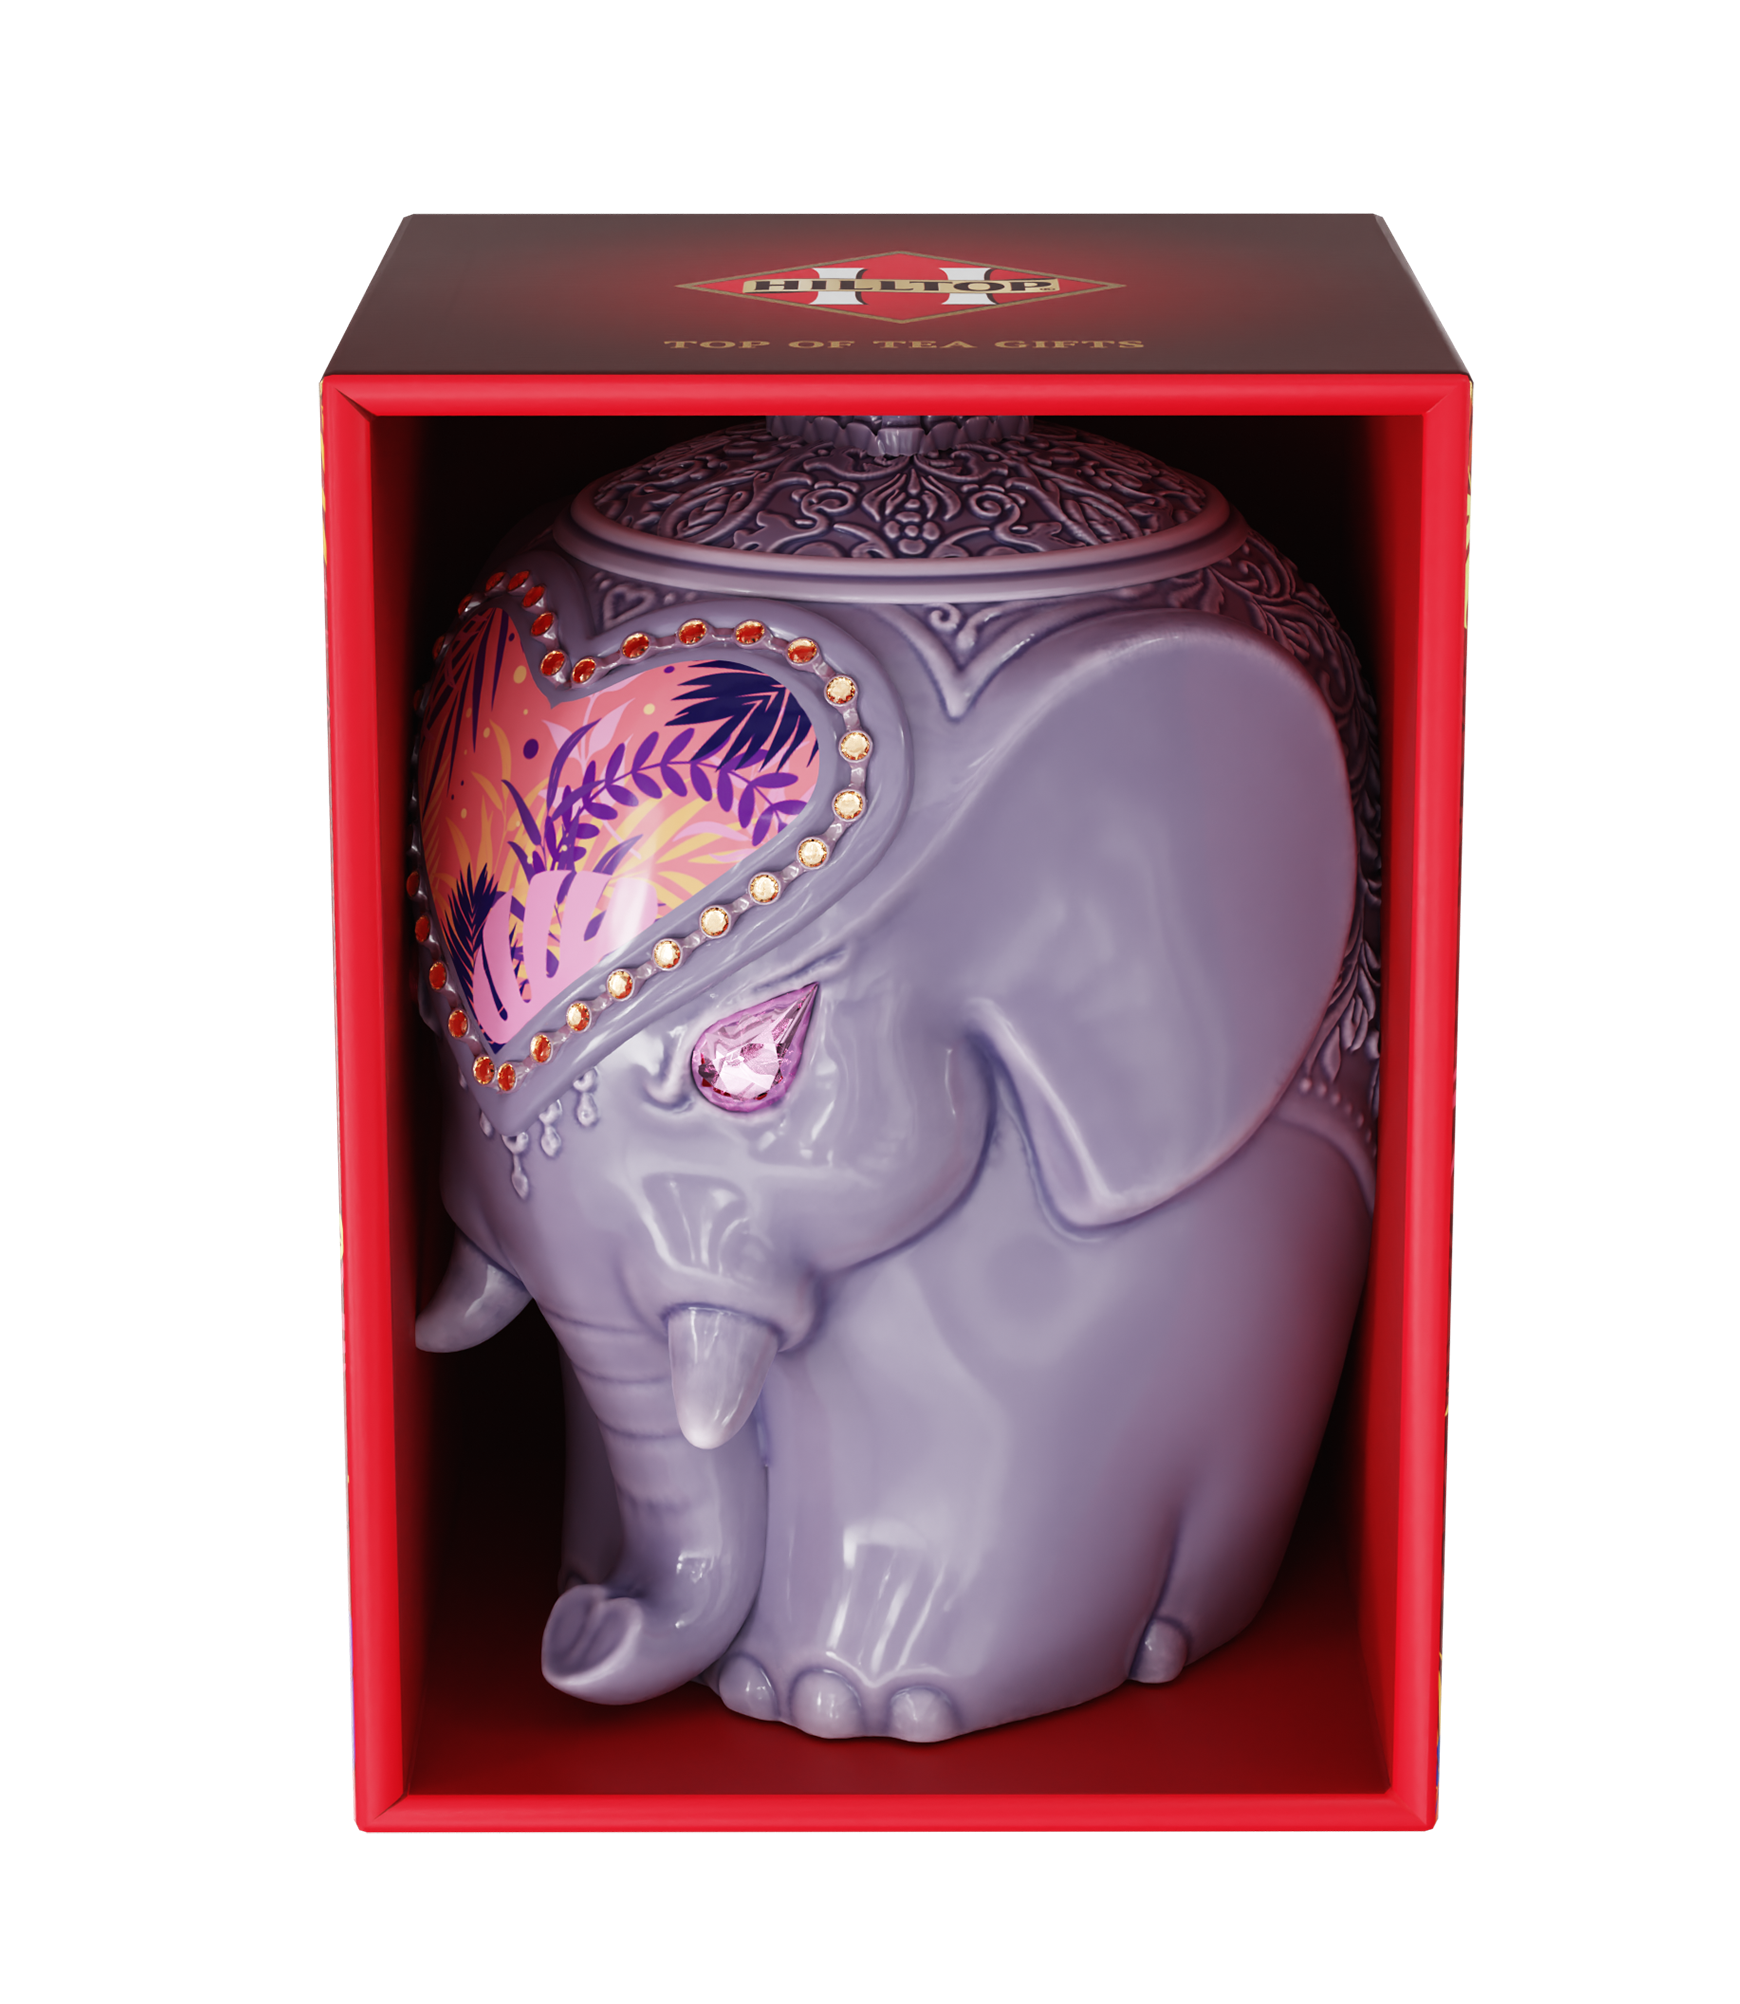 Подарочный чай Hilltop керамическая чайница Слон (Фиолетовый), 50 гр